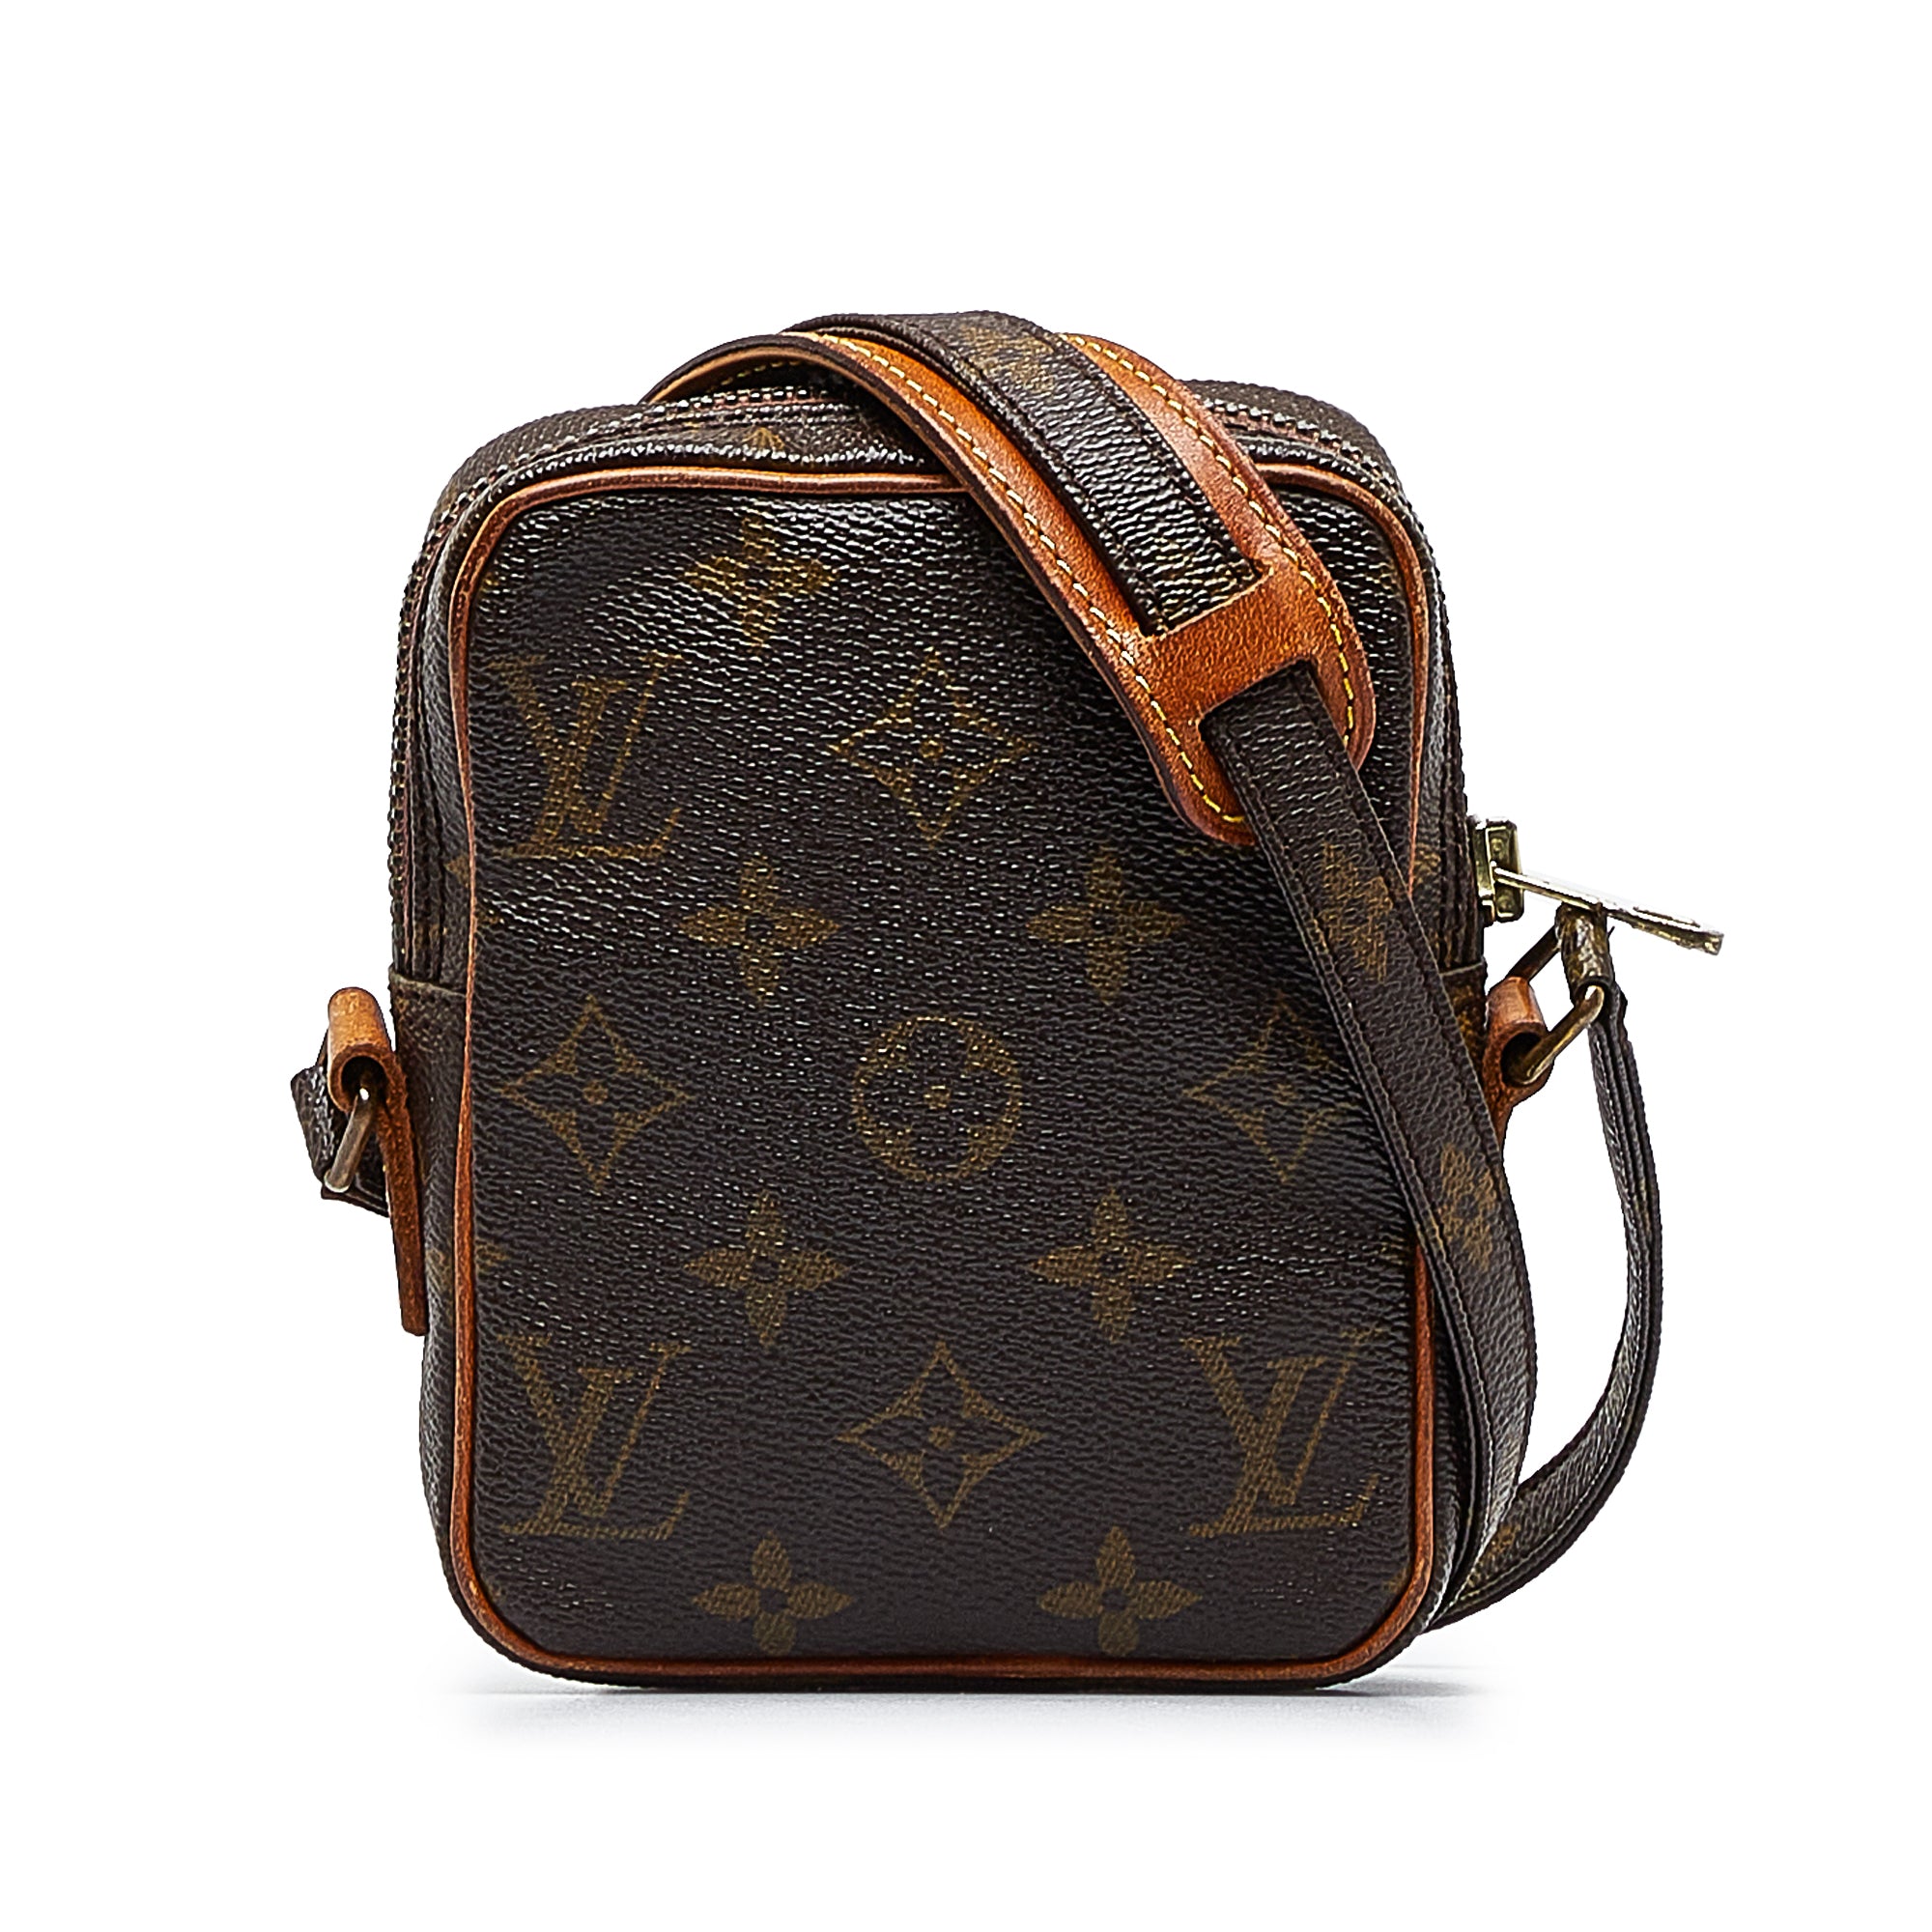 Louis Vuitton, Bags, Louis Vuitton Marshmallow Handbag